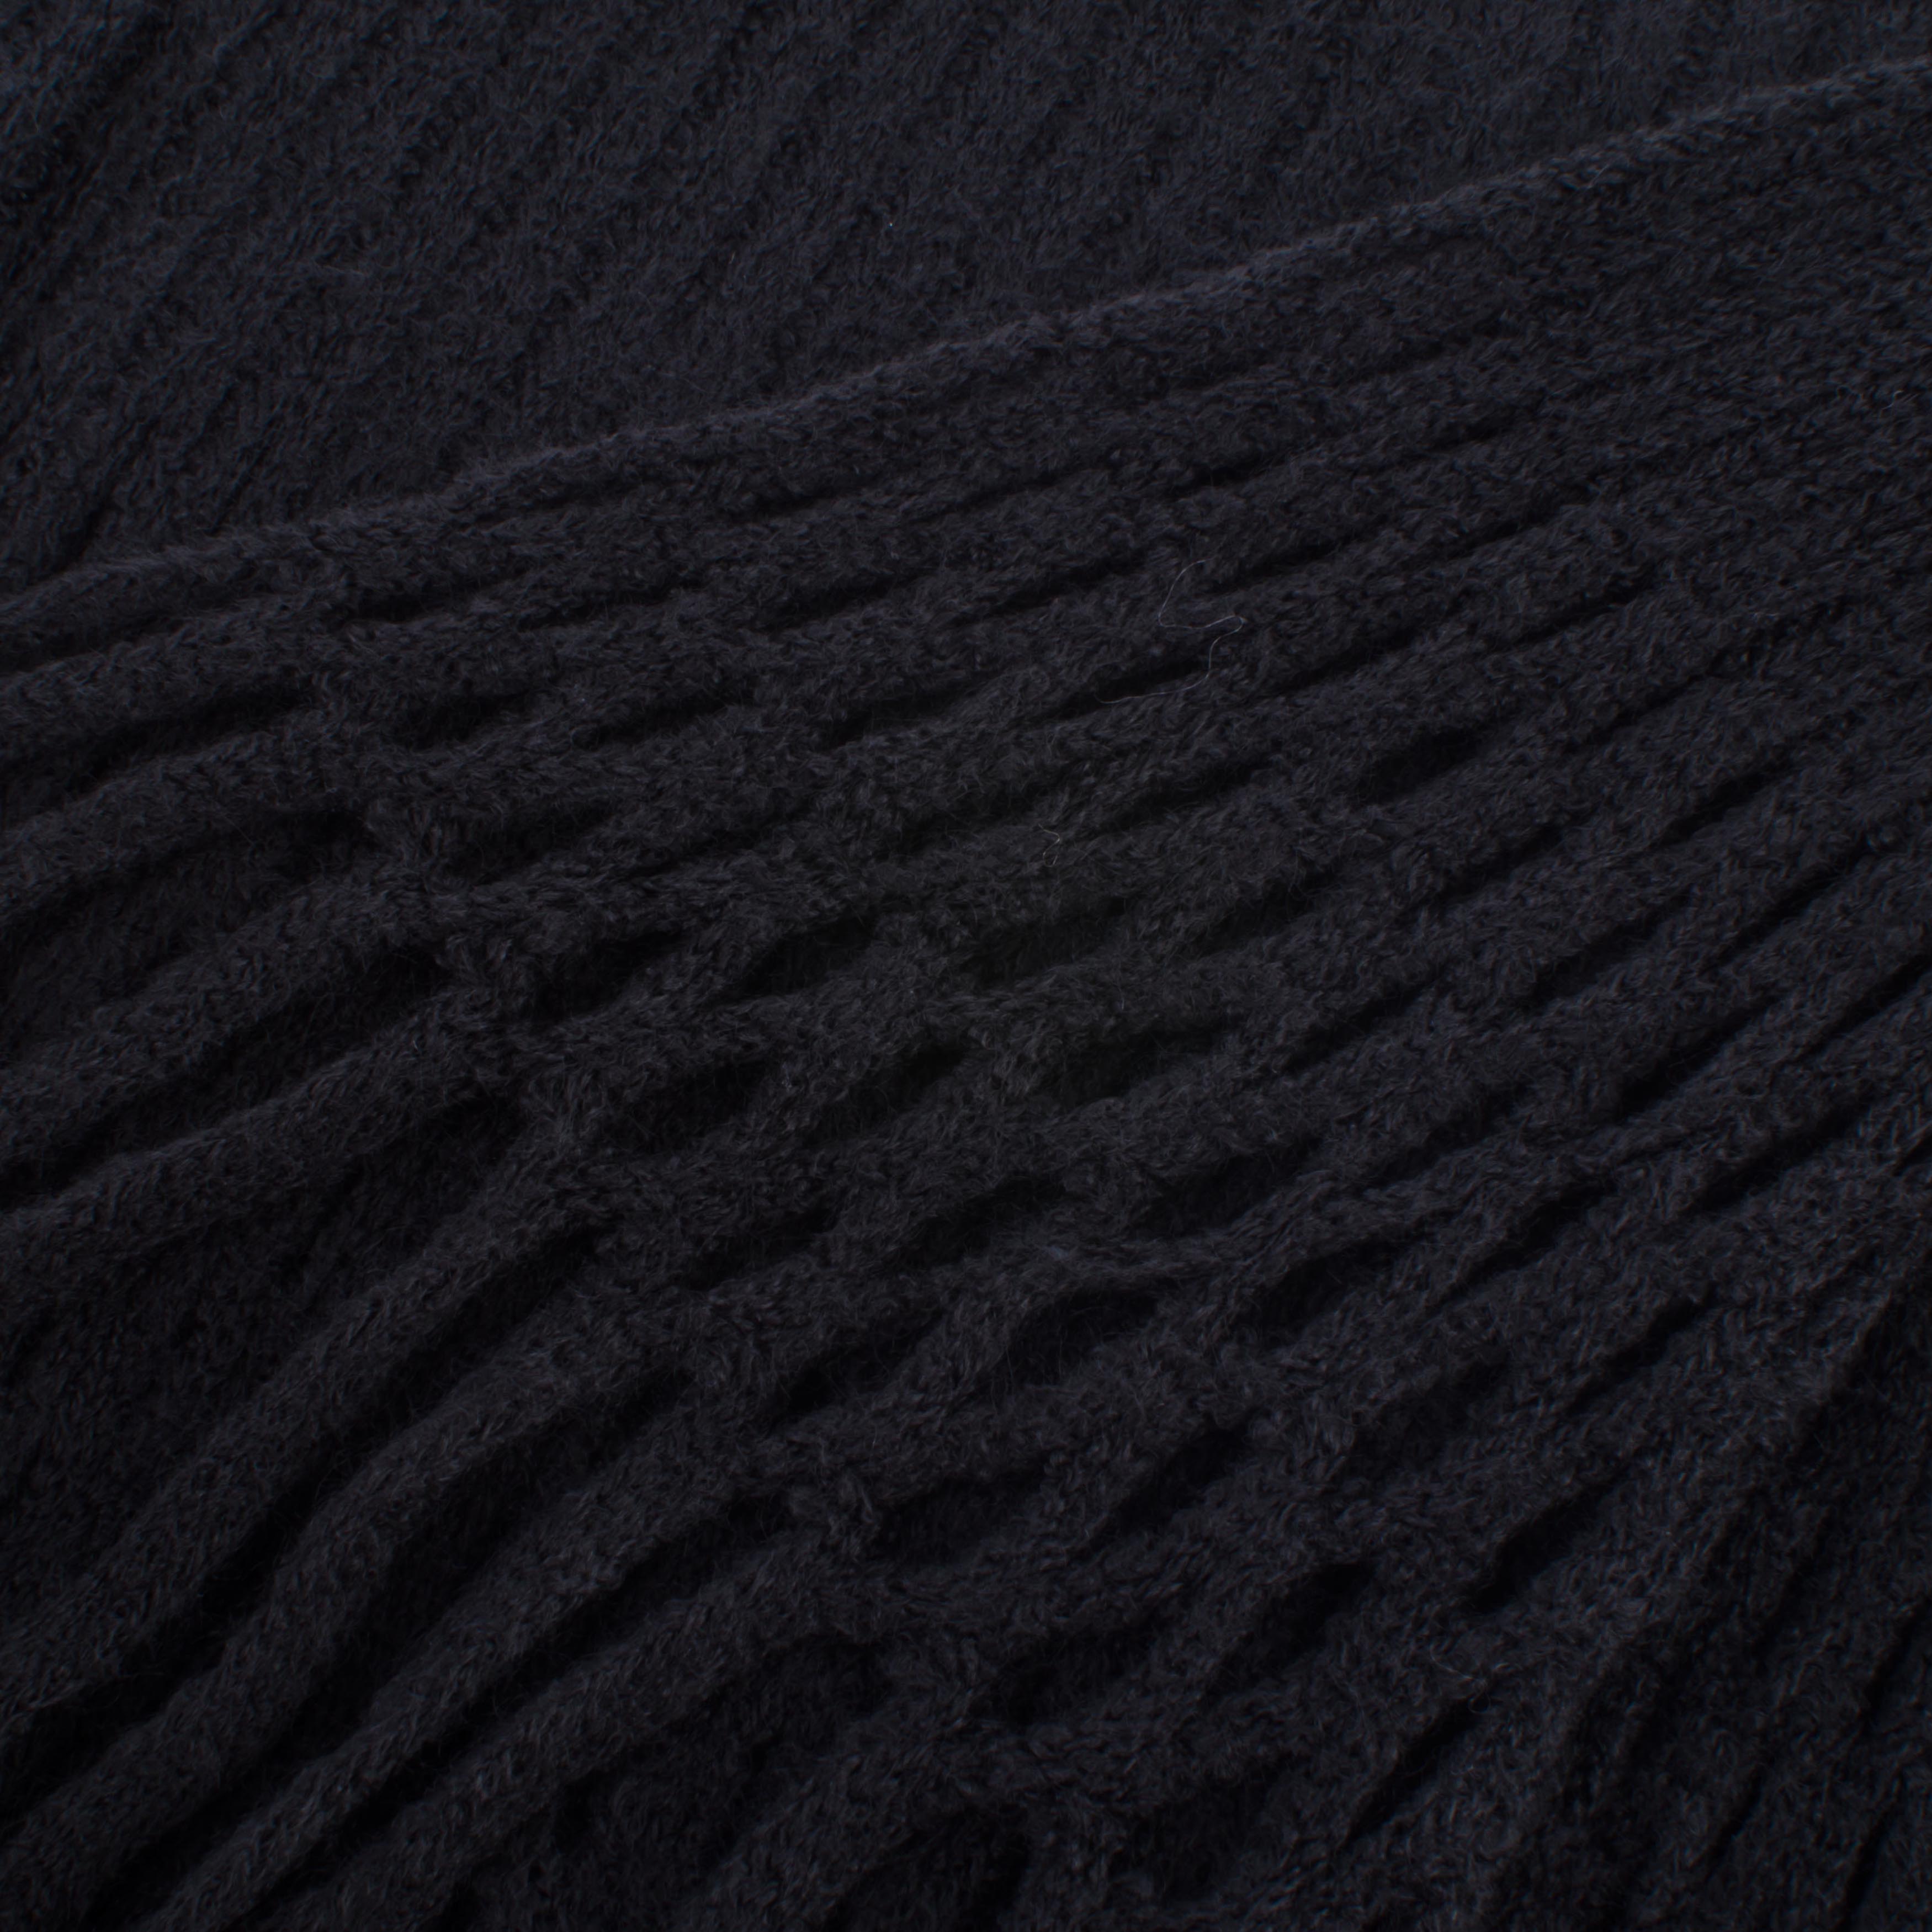 Пончо 130x160 Manterol po knit, размер 130х160 см - фото 2